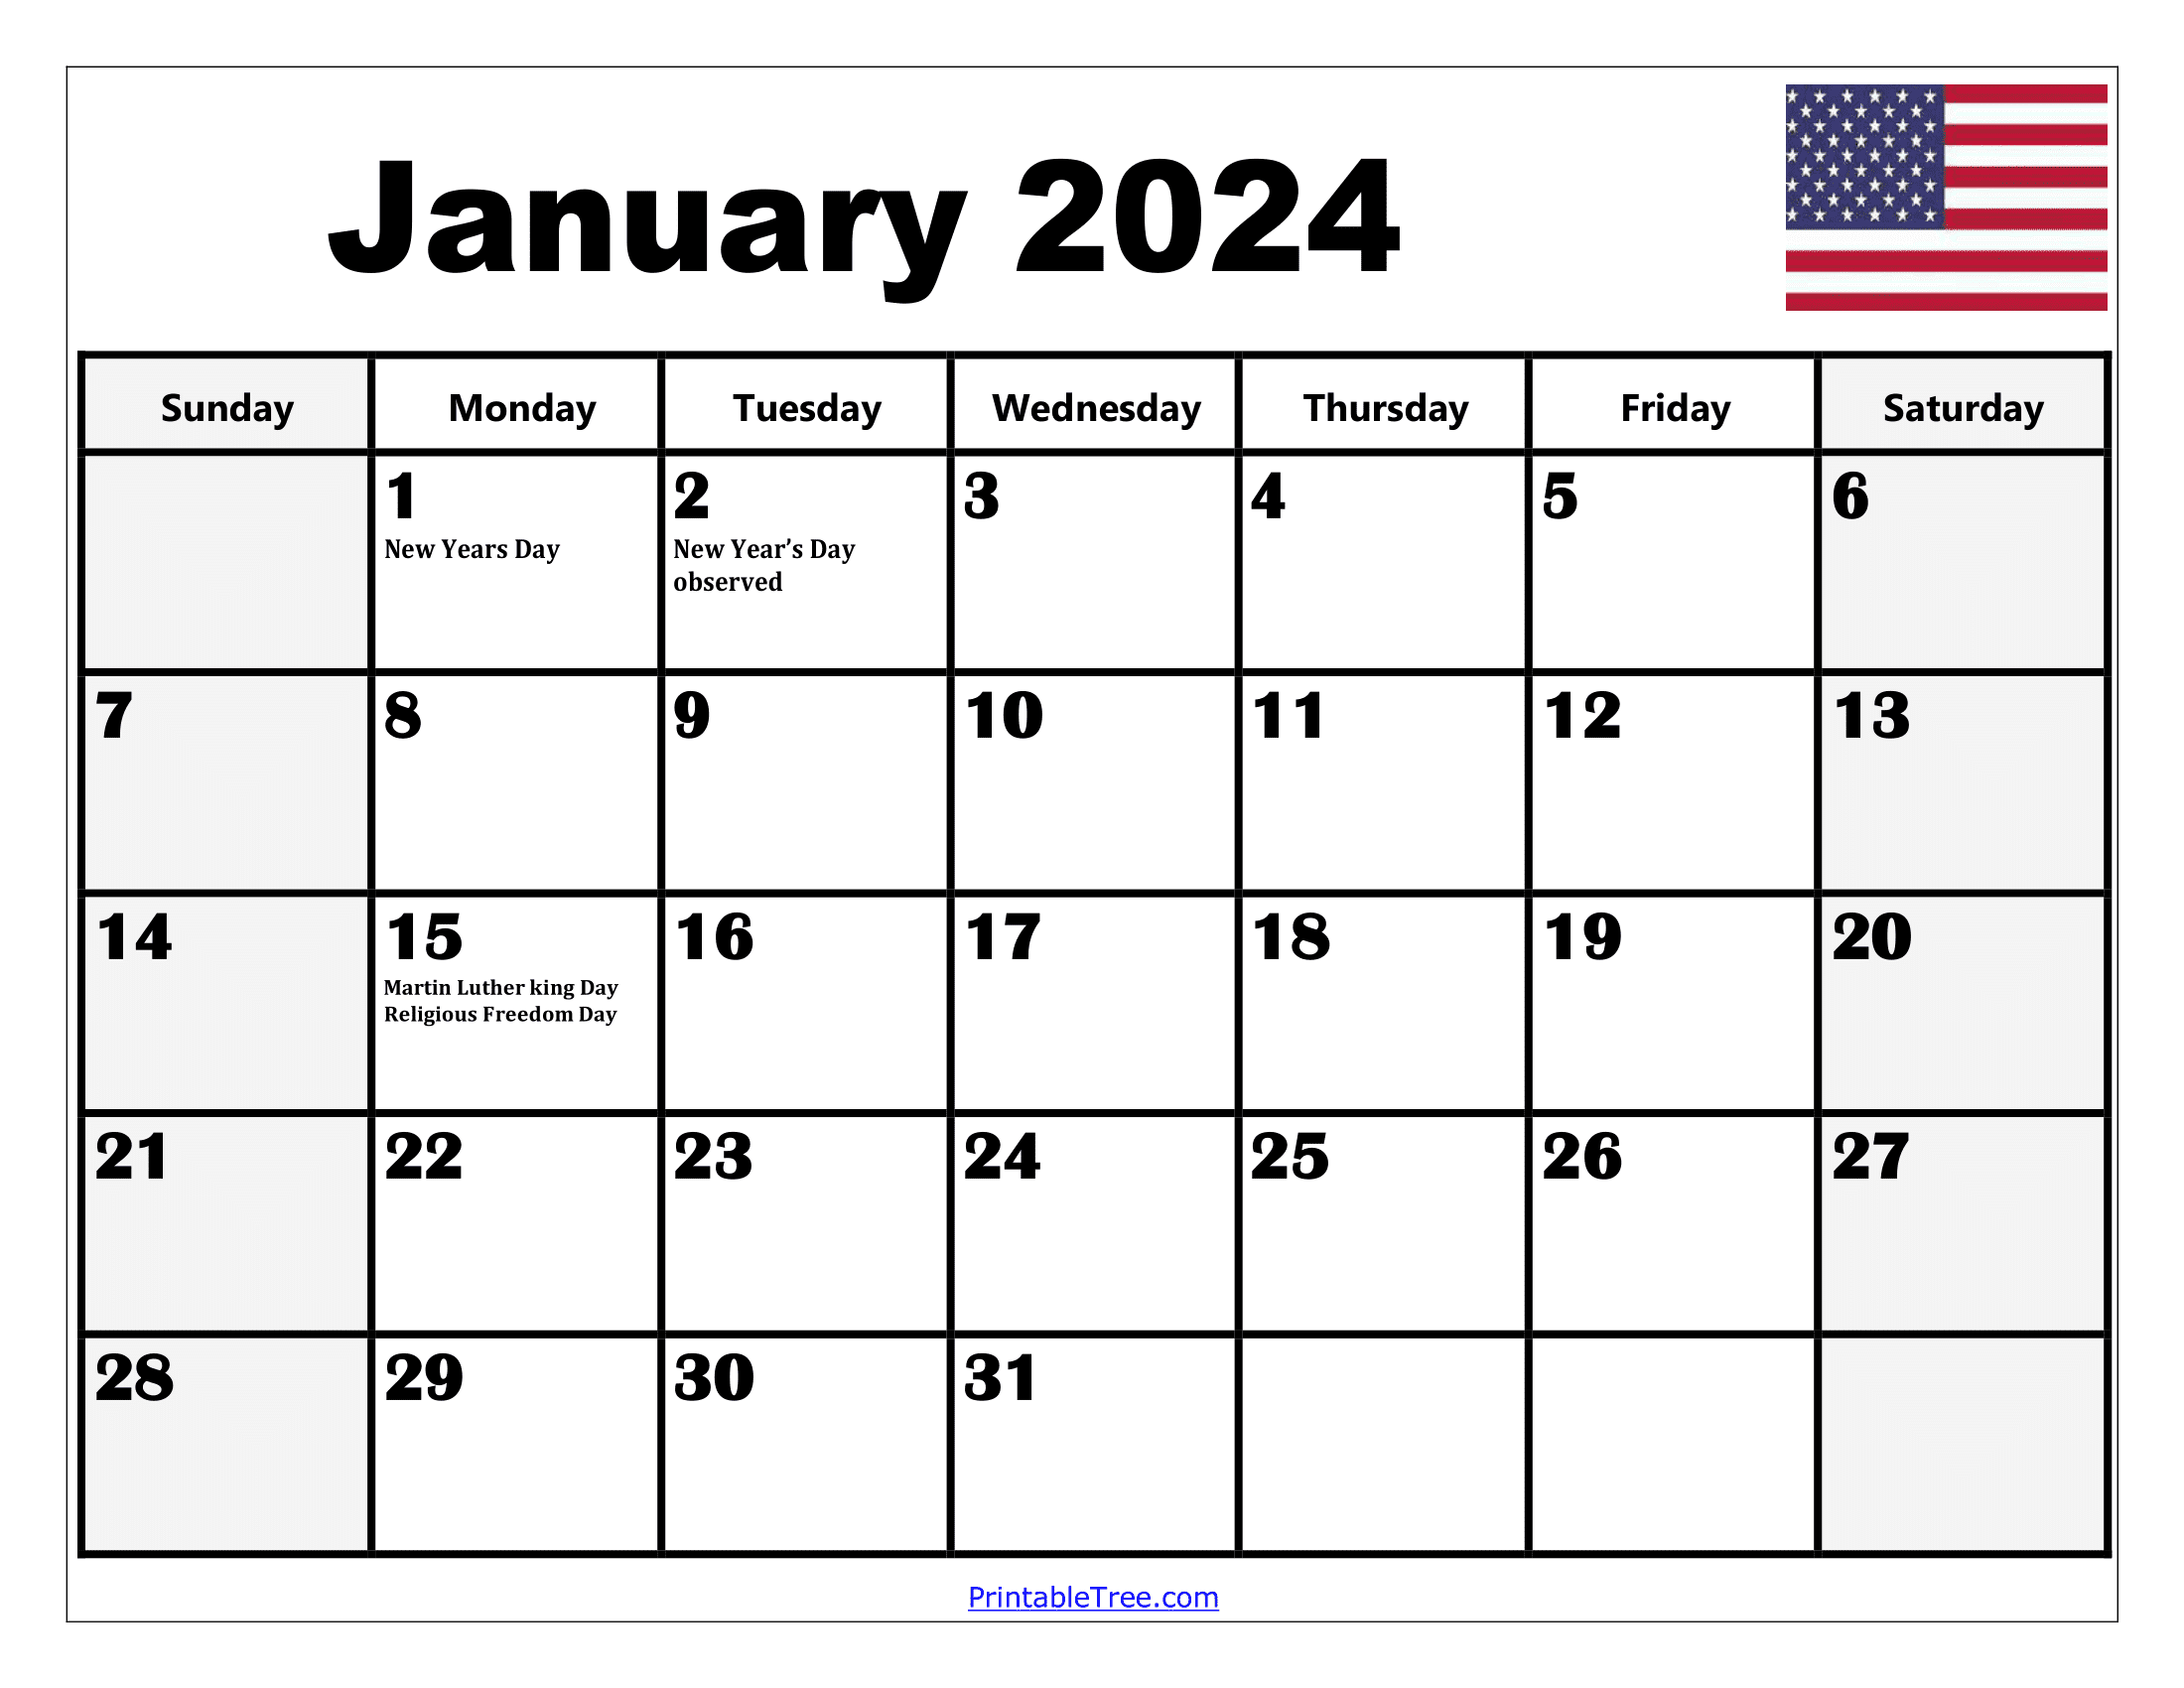 2024 Holiday Calendar Days Free Download Nov 2024 Calendar - Free Printable 2024 Calendar With Holidays Pinterest